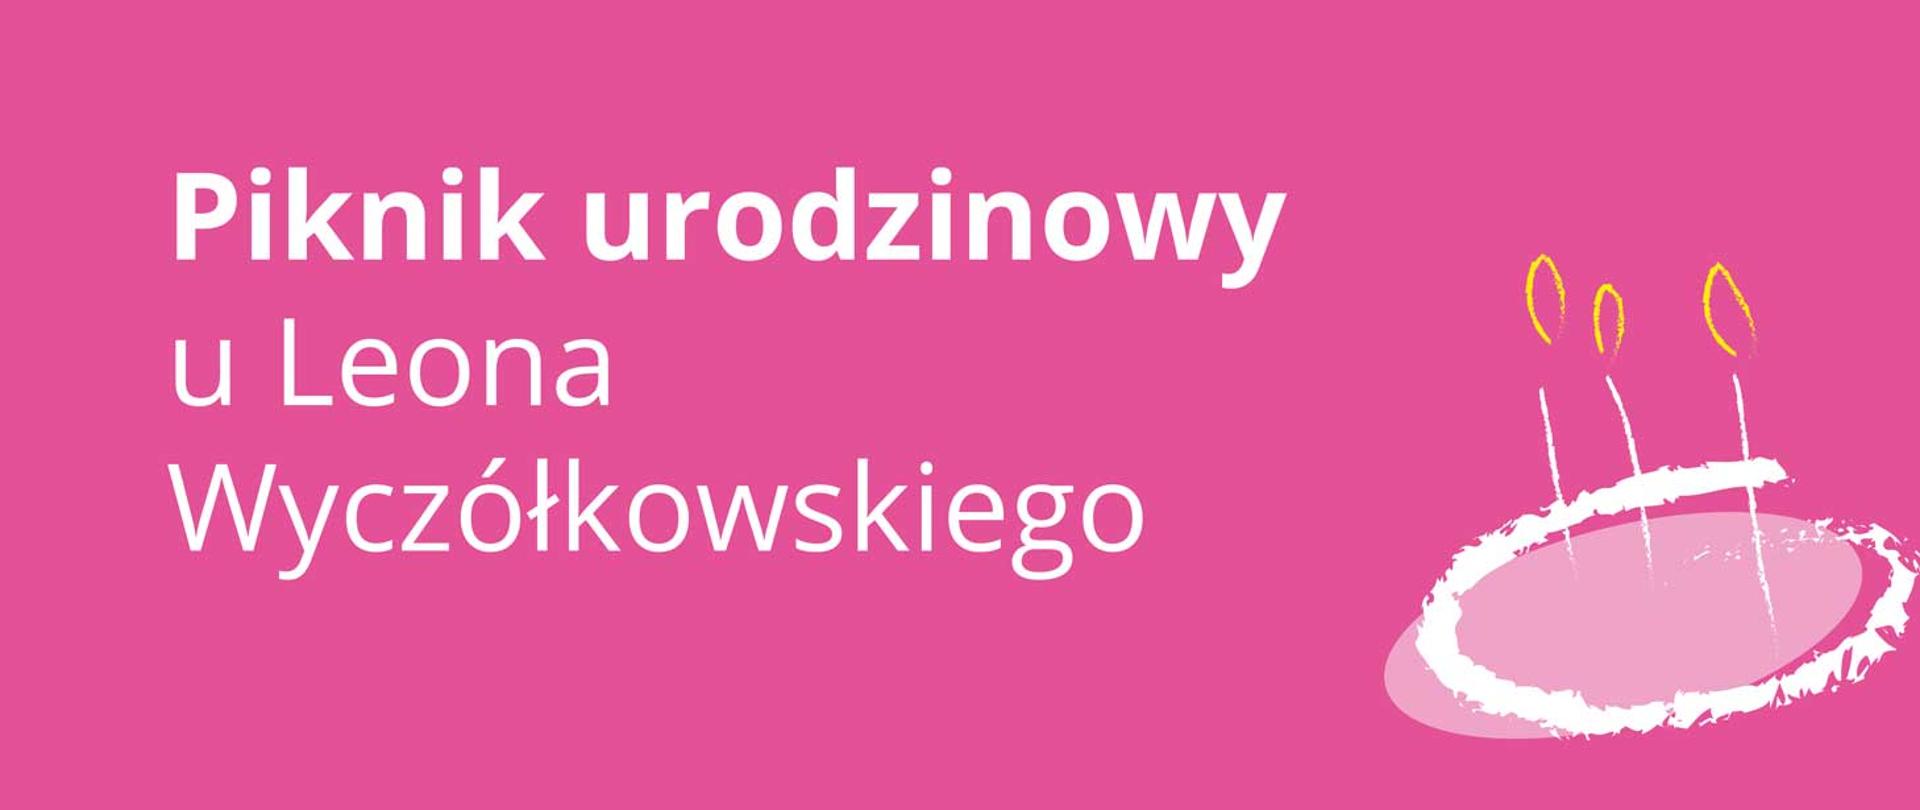 Biały napis „Piknik urodzinowy u Leona Wyczółkowskiego” na różowym tle, w prawym dolnym roku grafika tortu urodzinowego